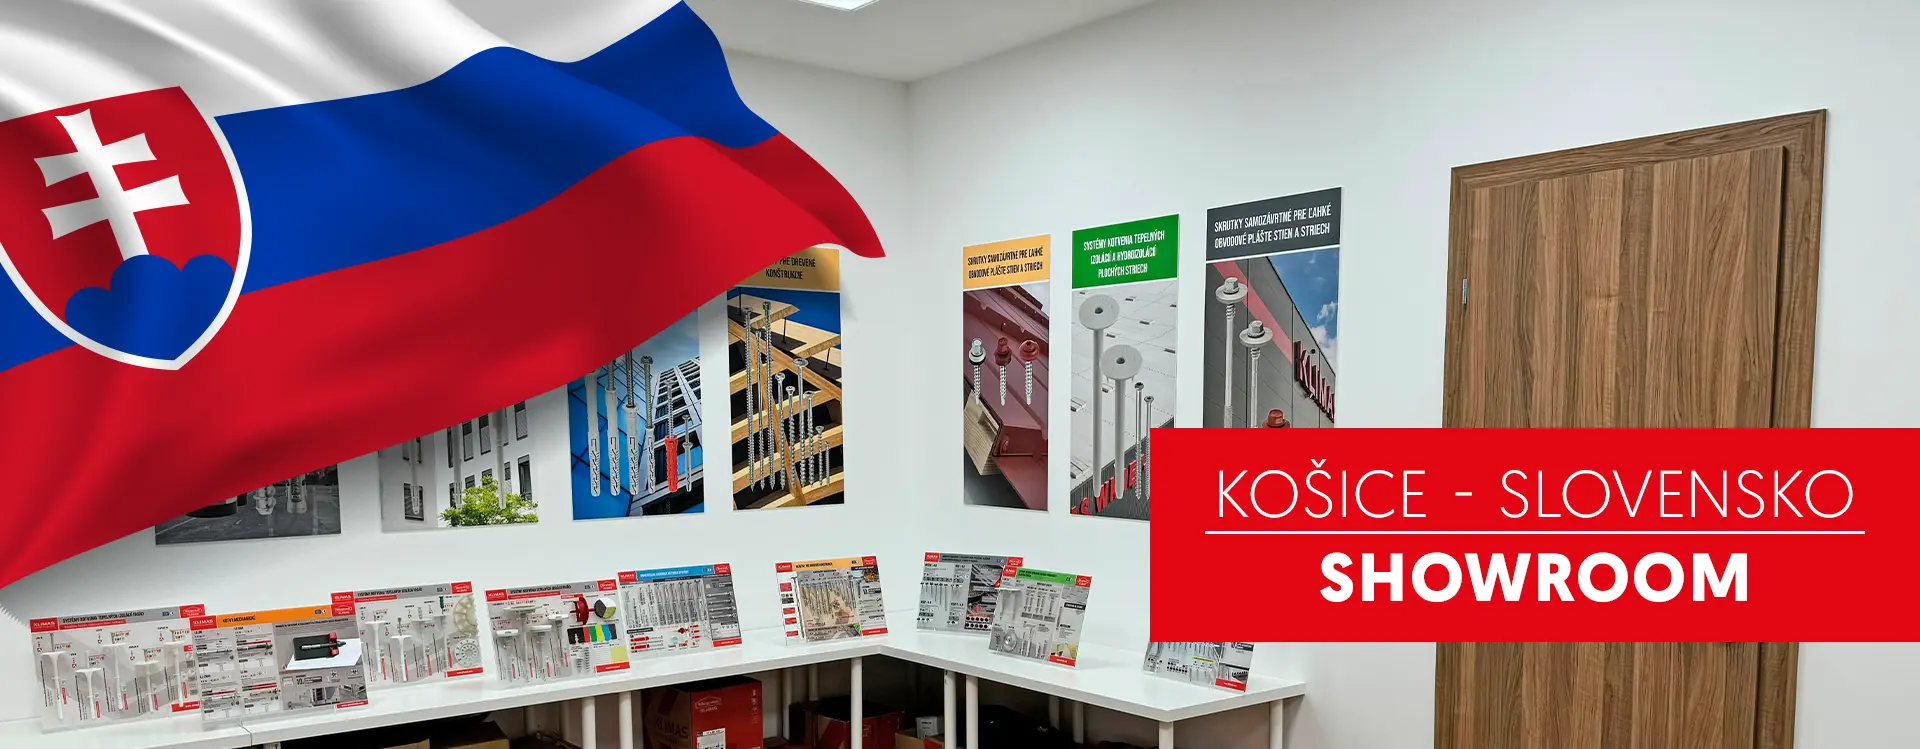 Nový showroom značky na Slovensku